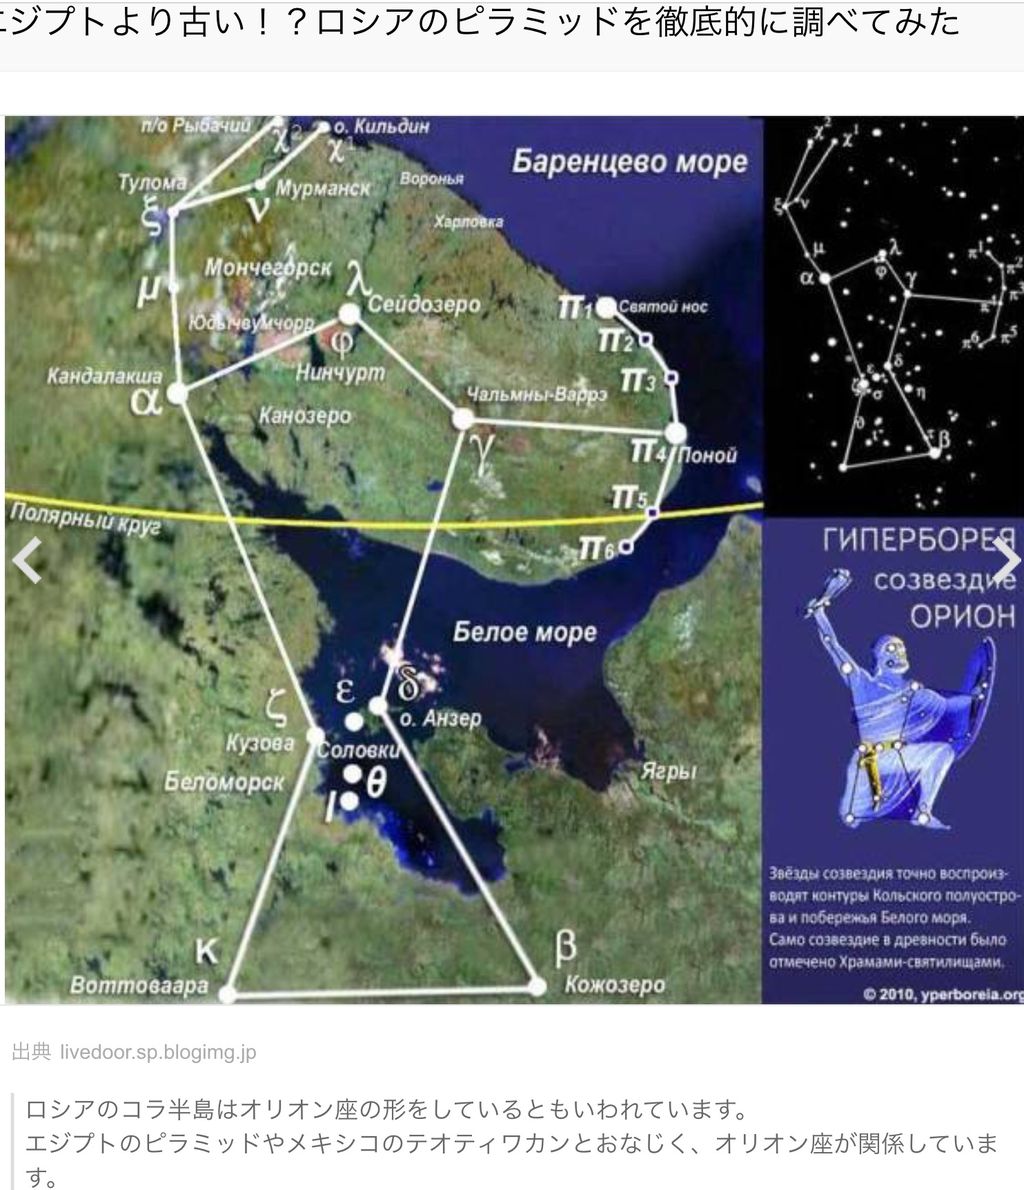 ロシア北方にあるコラ半島では 人間の手によって作られたピラミッド型の遺跡が発見された 地球市民点描 麻川明 黙雷